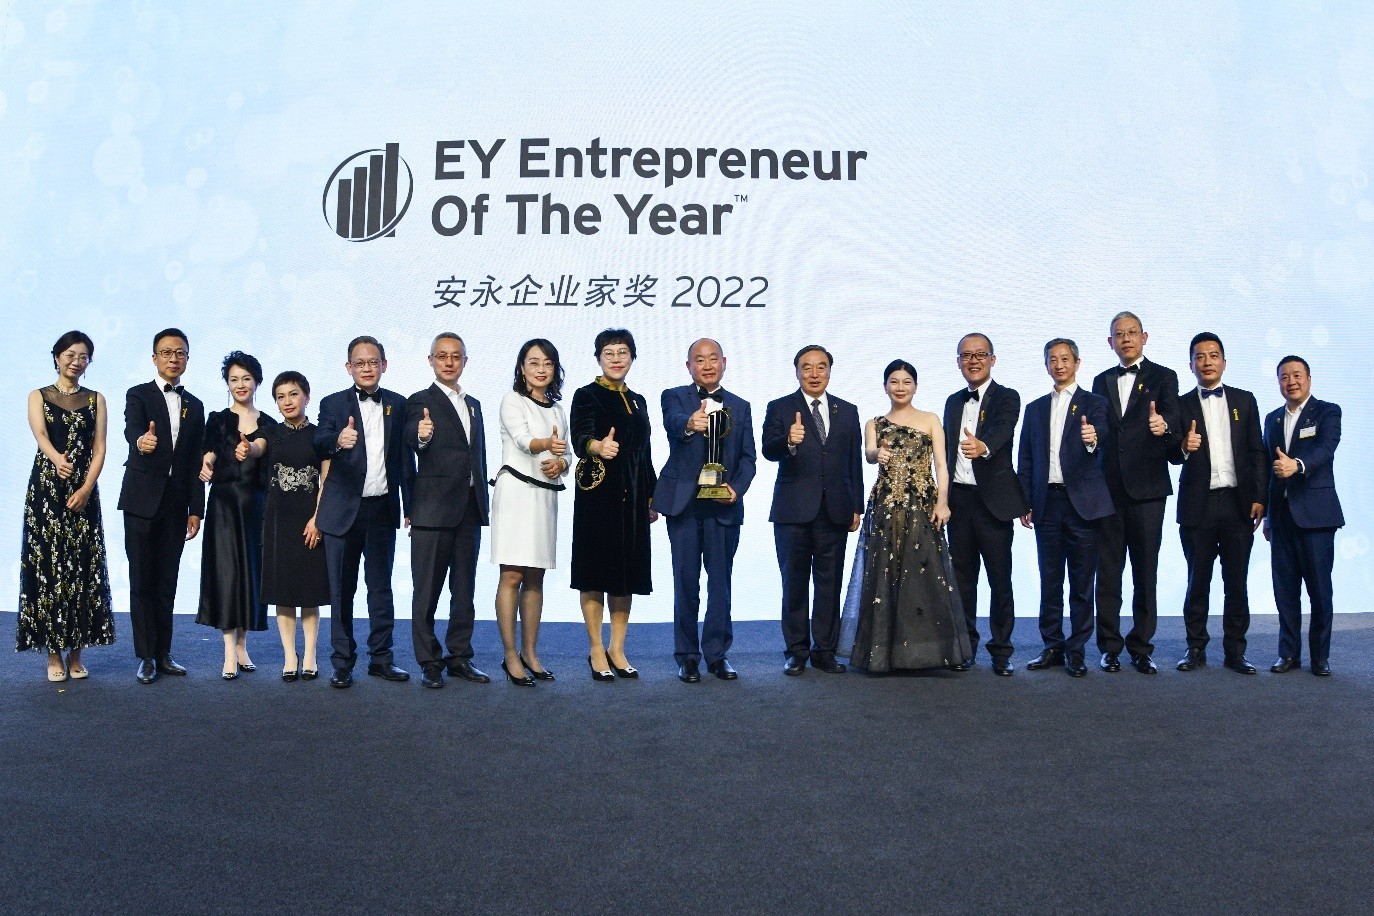 安永企业家奖2022颁奖典礼出席者合照